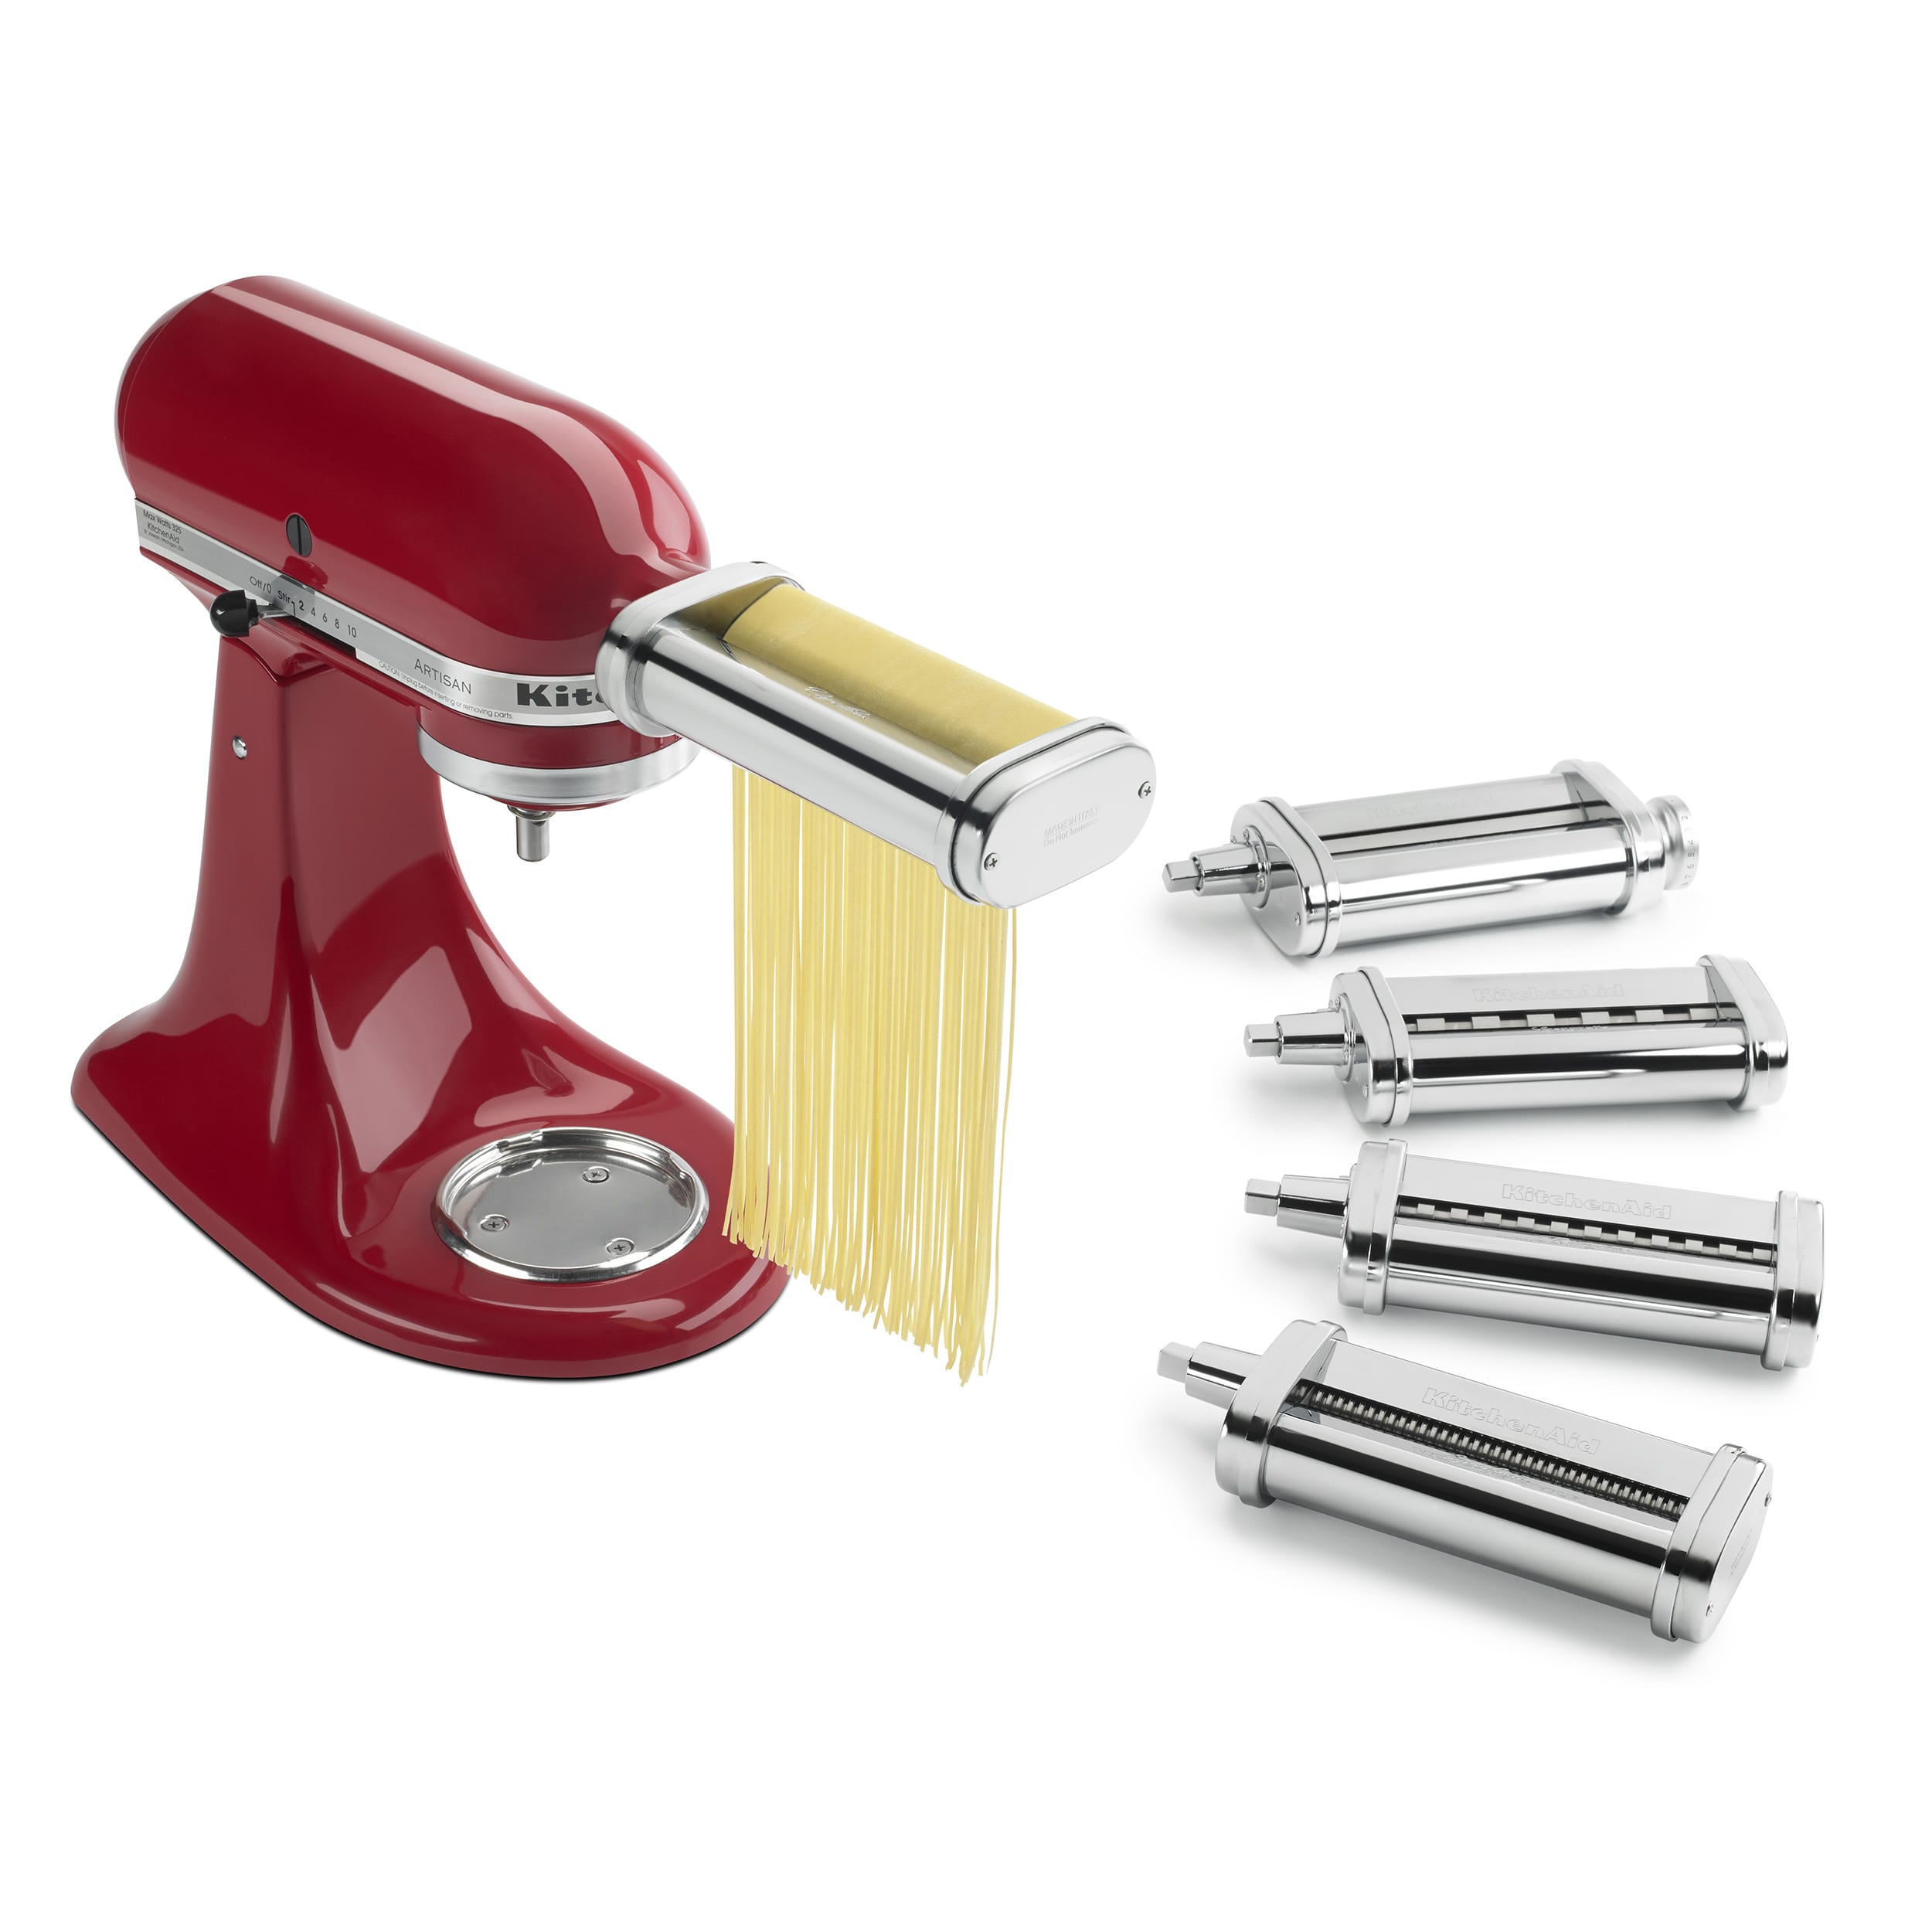 KitchenAid® ProLine® 7-Quart Stand Mixer and KitchenAid® Pasta Attachment  Review